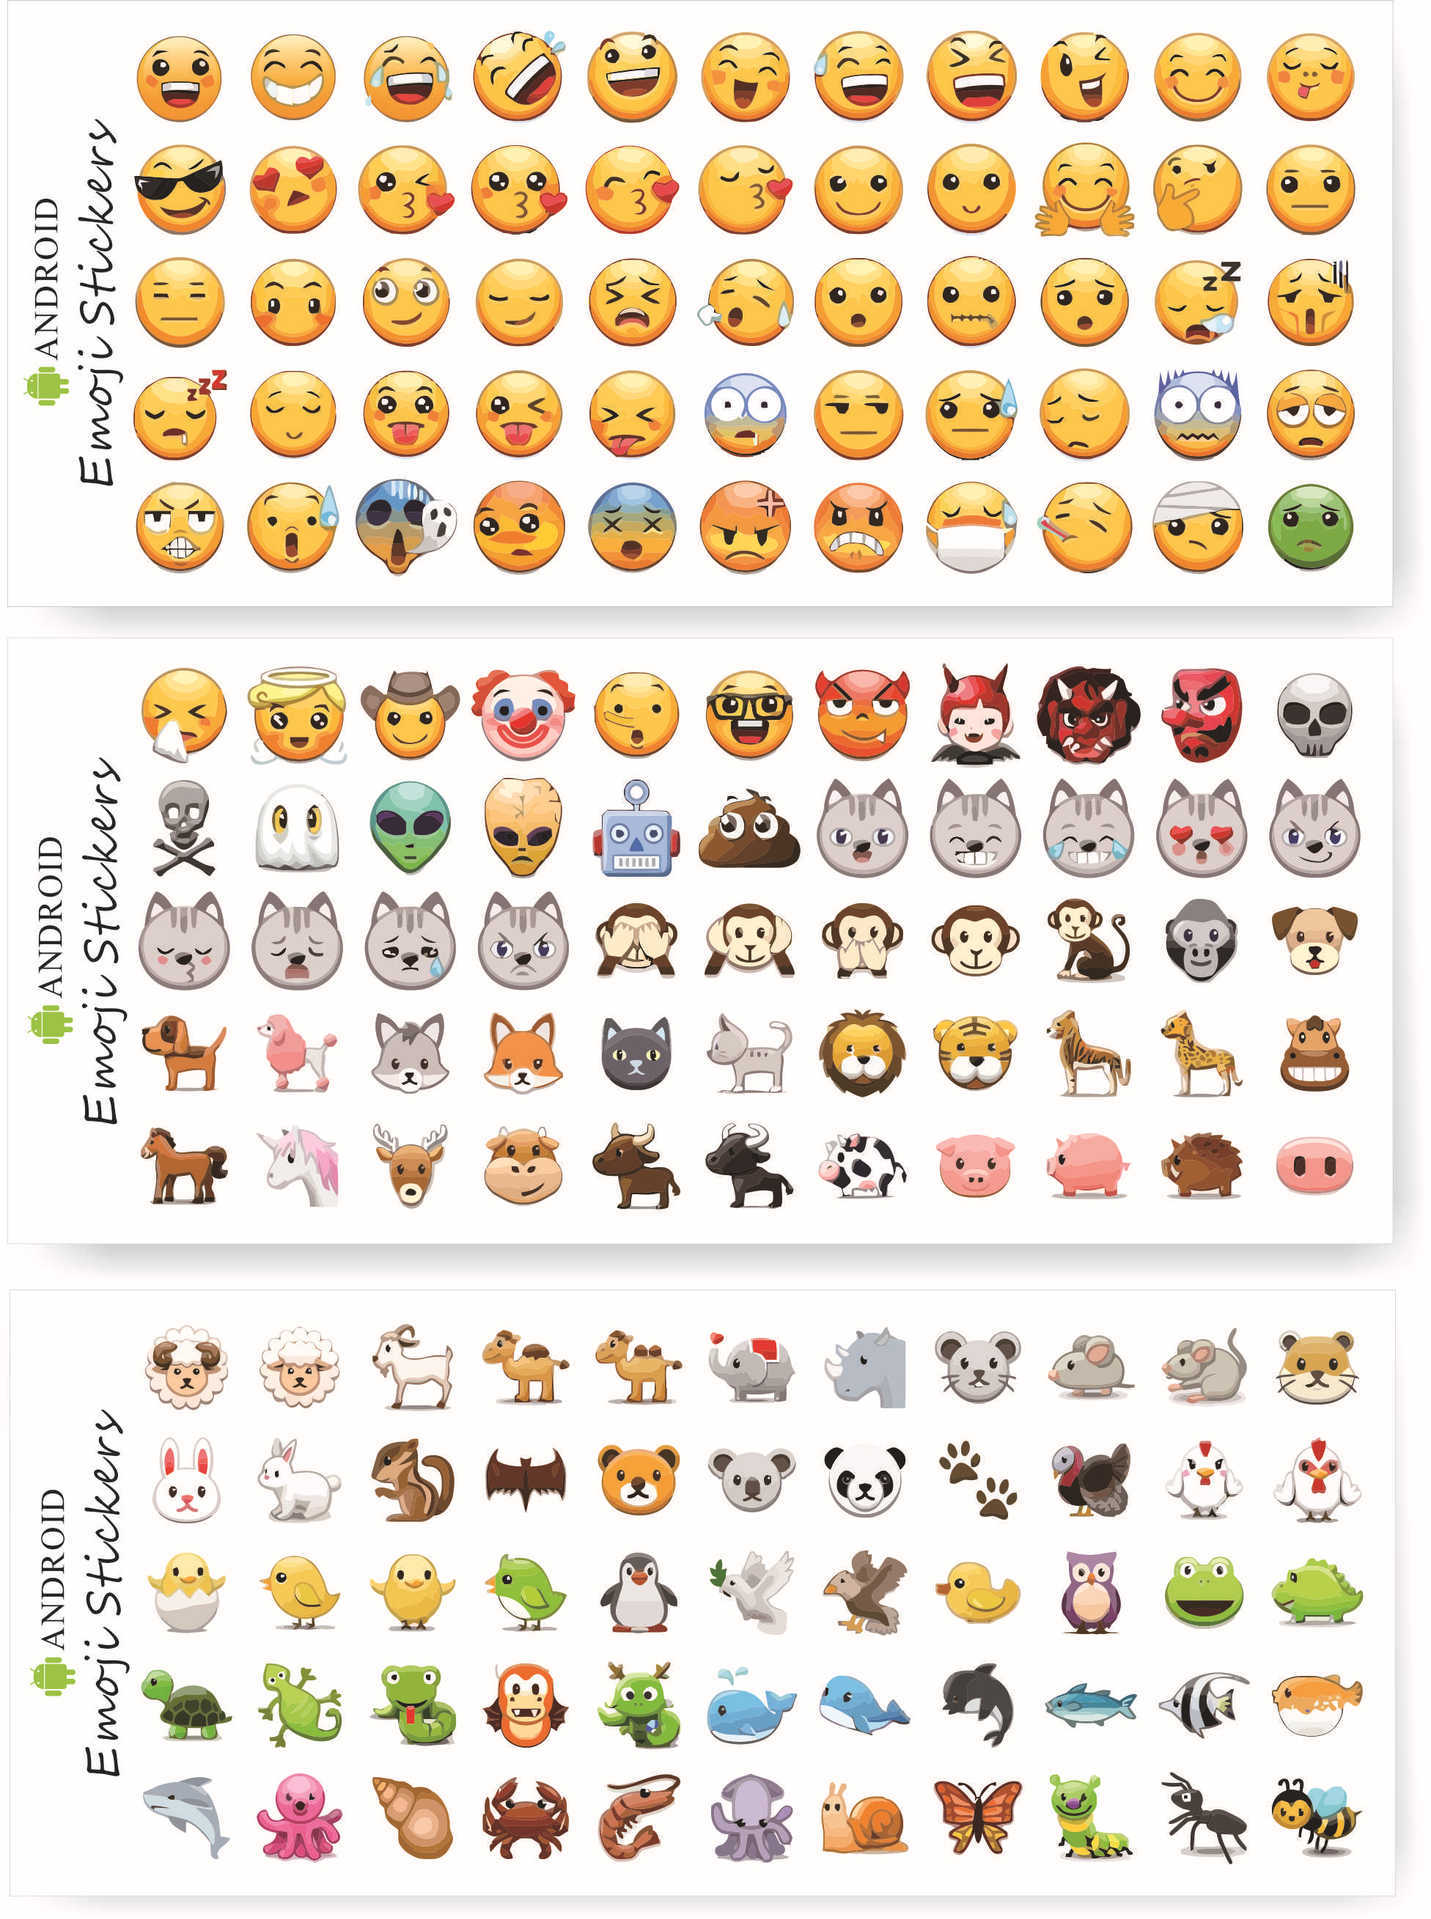 微信新表情 emoji